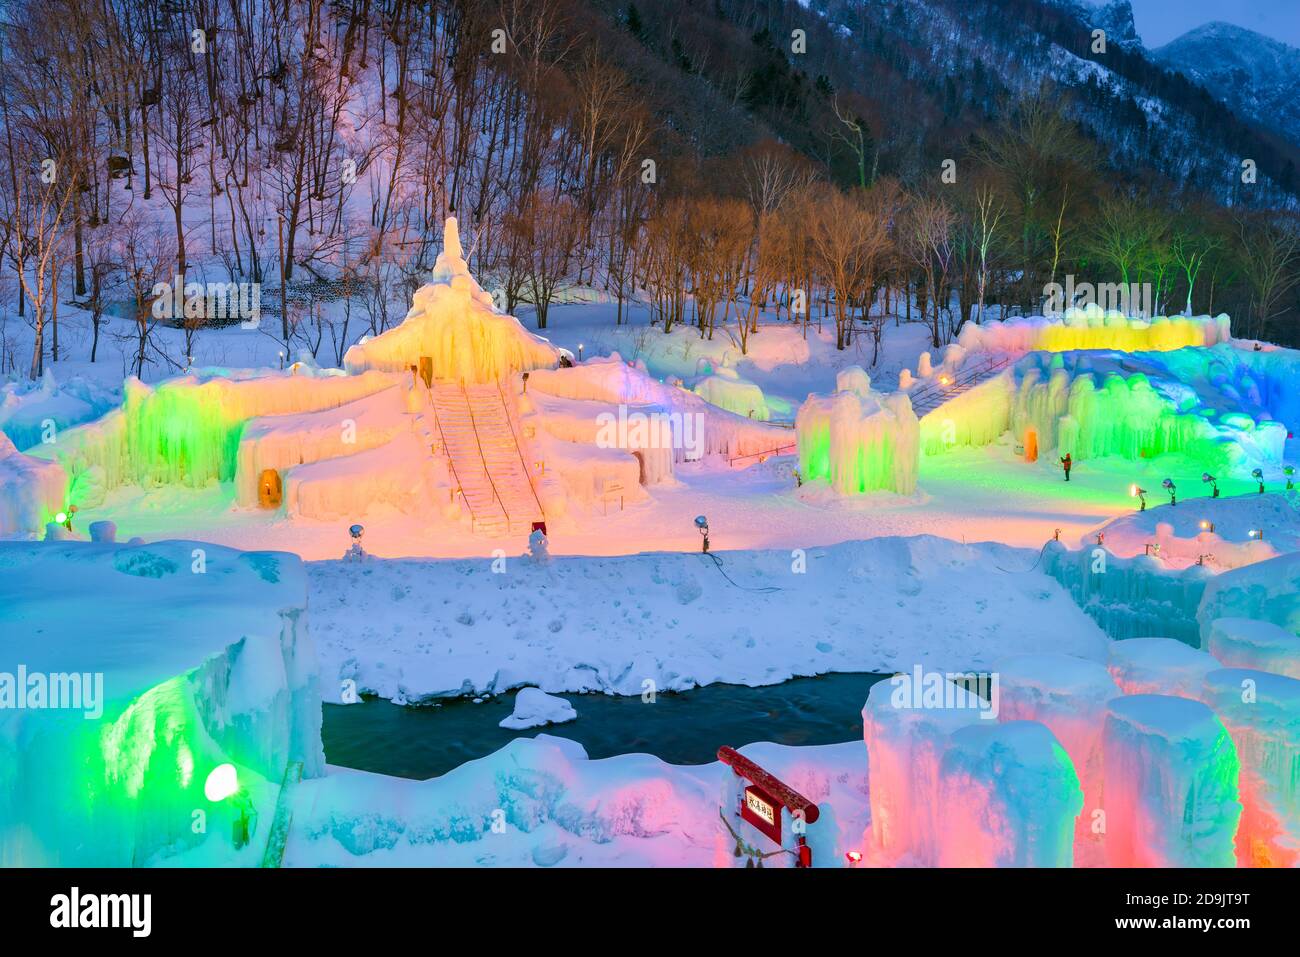 SOUNKYO, JAPON - 14 FÉVRIER 2017 : sculptures de glace illuminées au Festival annuel de glace de Sounkyo. Banque D'Images